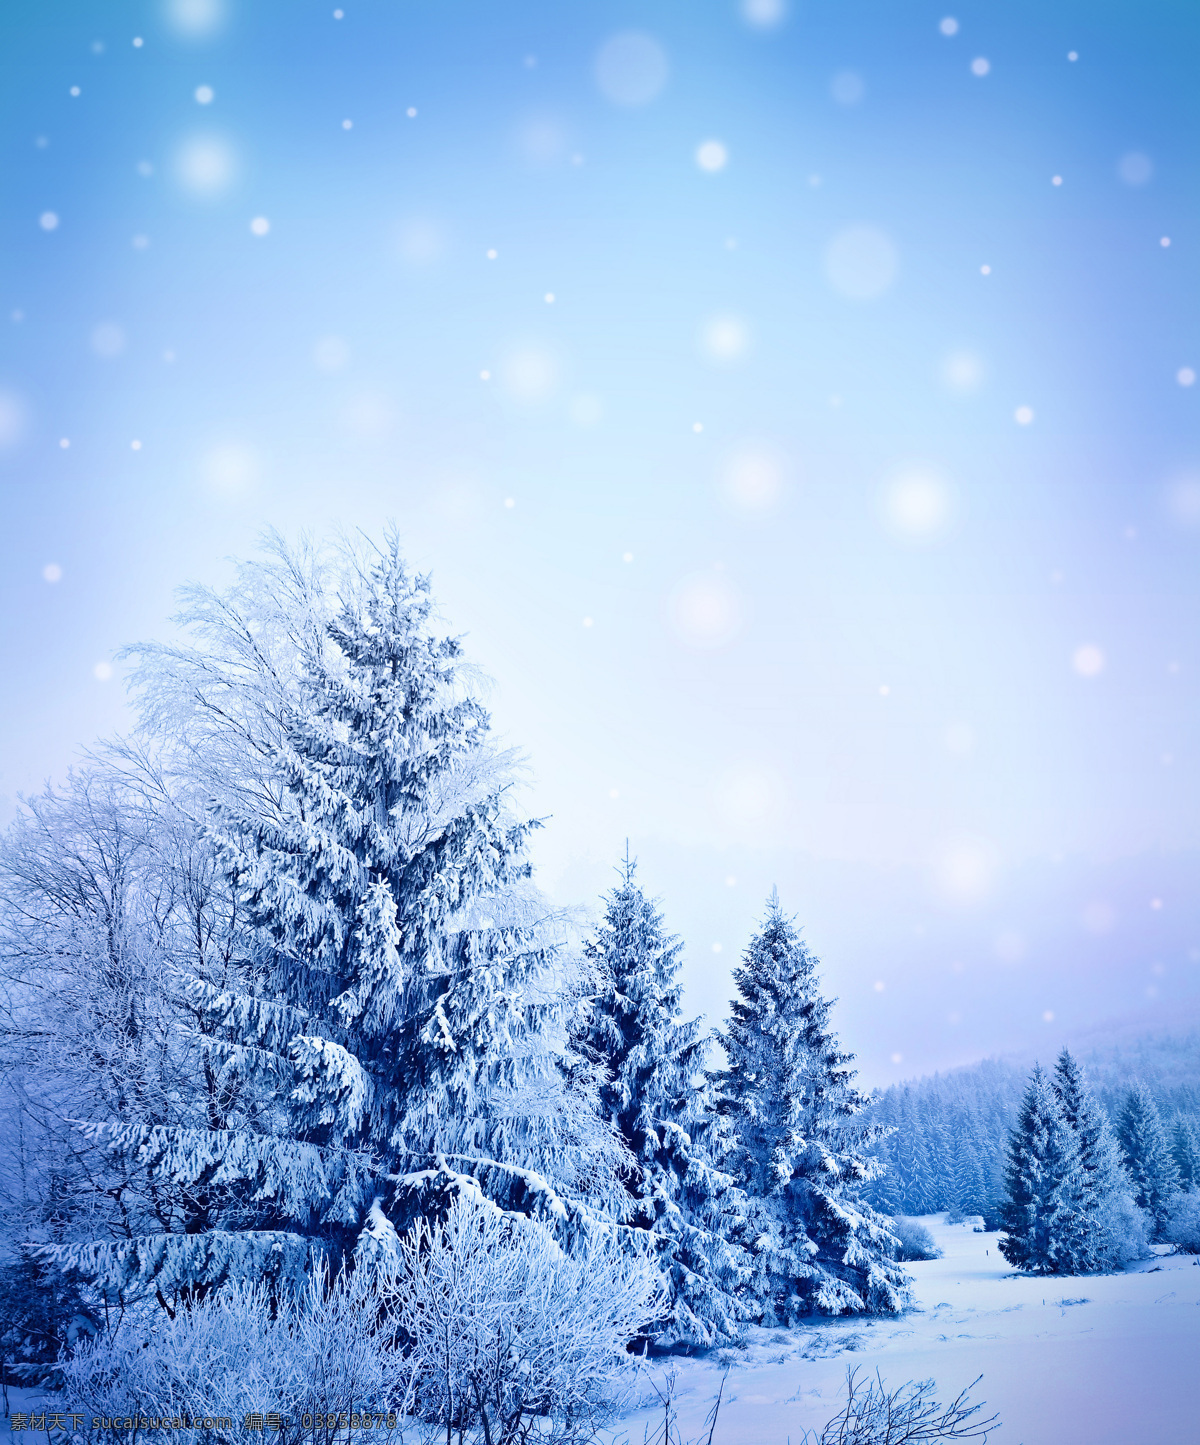 美丽雪山美景 冬季 冬天 雪景 美丽风景 景色 美景 雪山 树林 自然风景 自然景观 蓝色